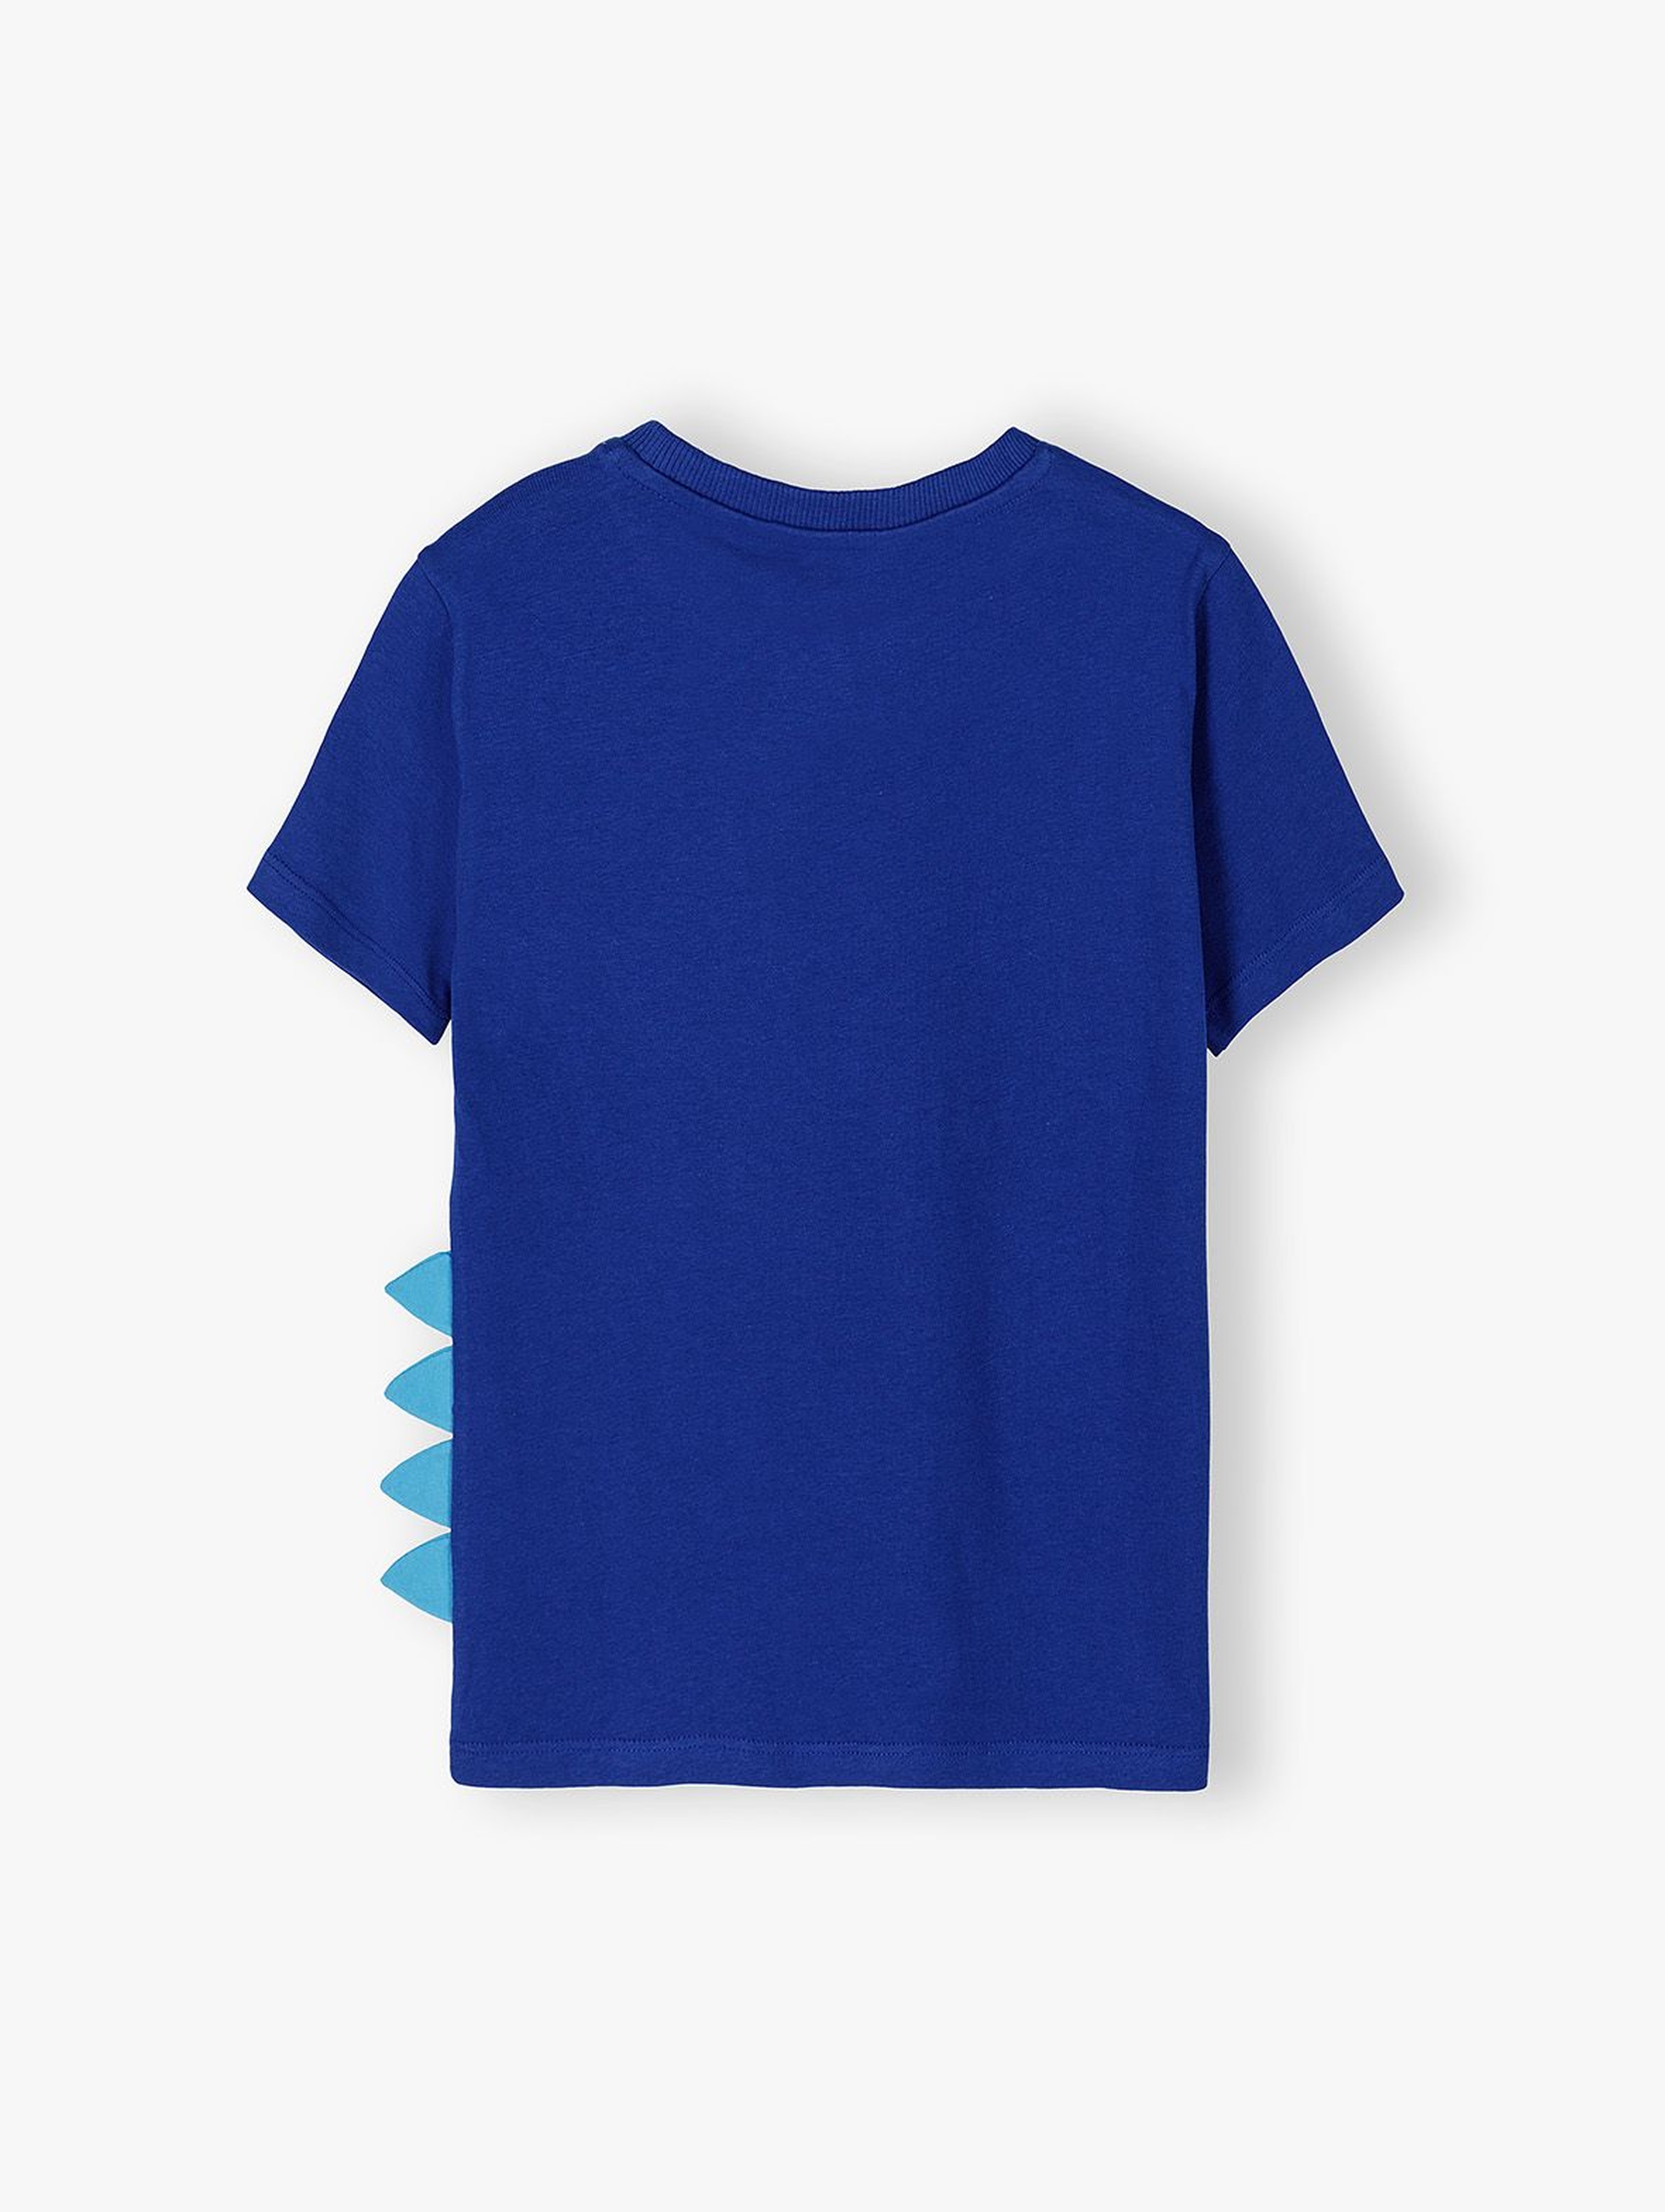 Bawełniany t-shirt chłopięcy z elementem 3D niebieski DINO